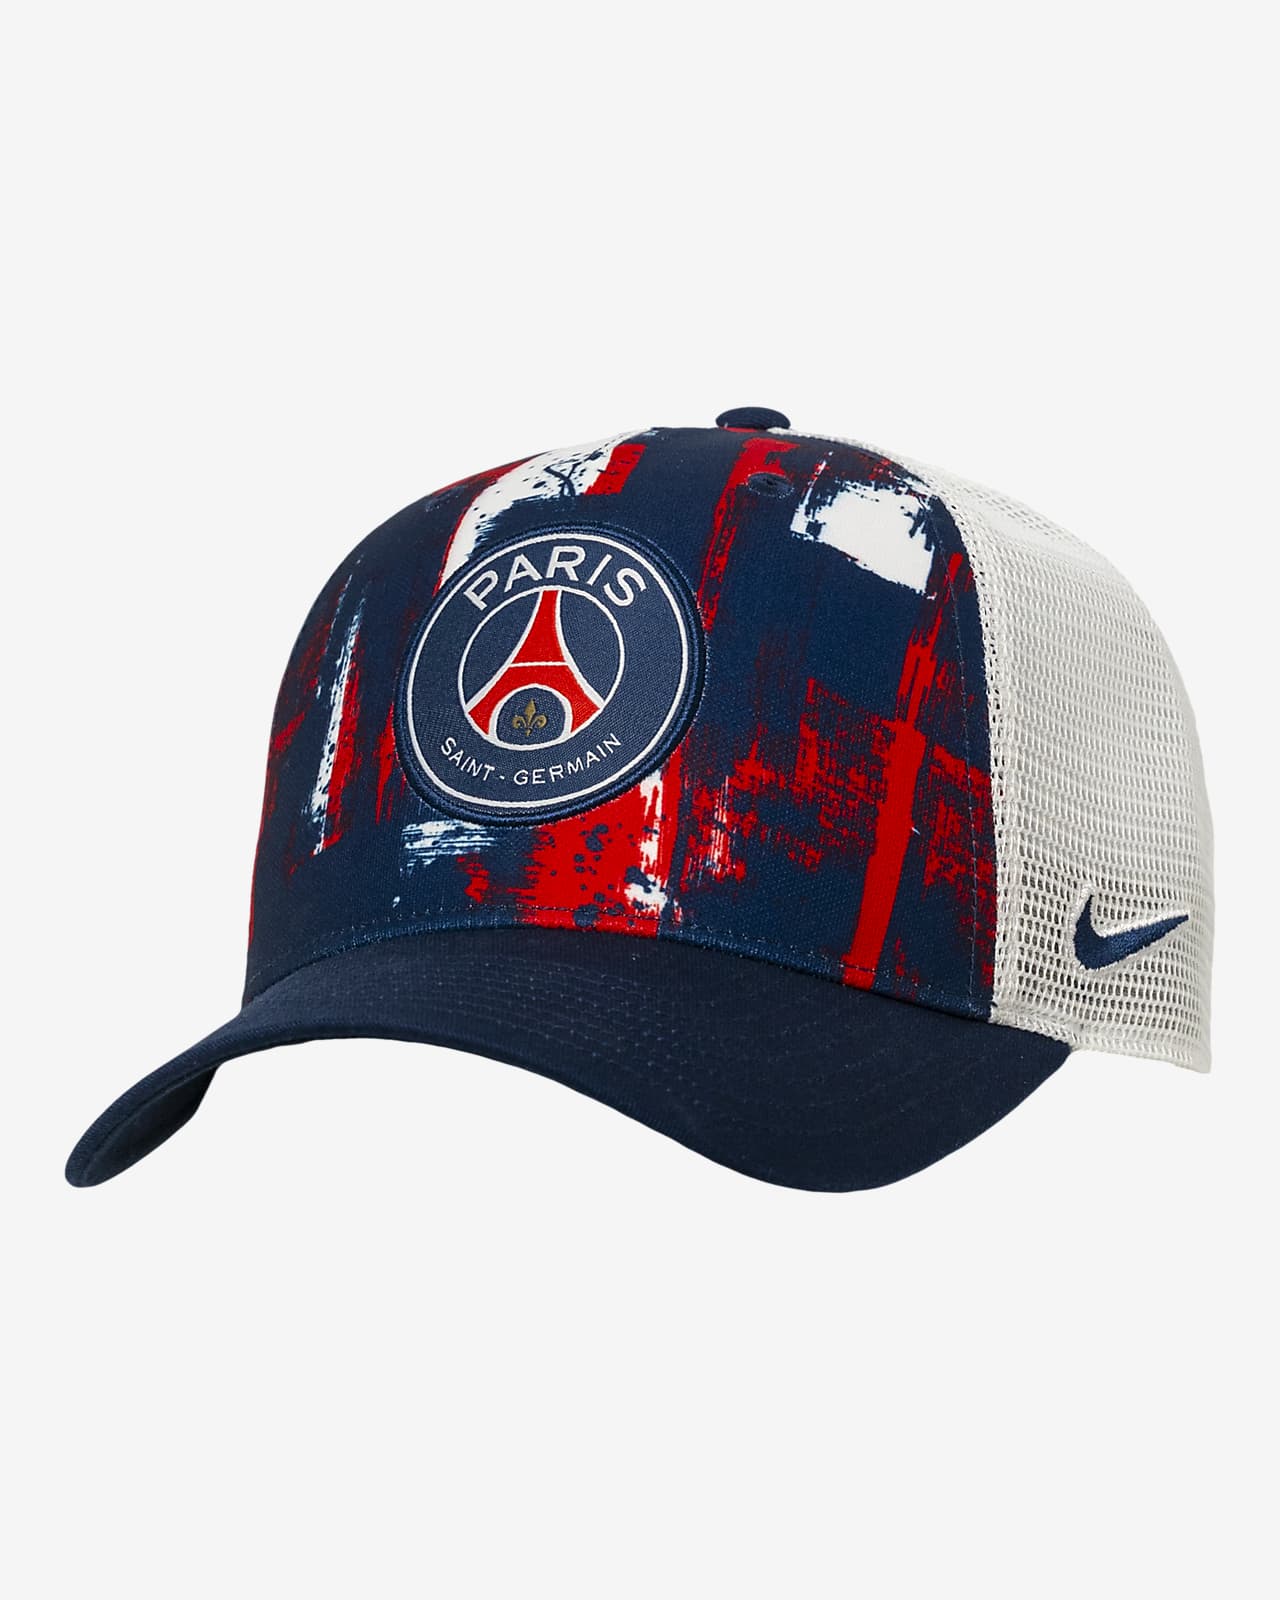 Paris Saint-Germain Nike Soccer Trucker Cap